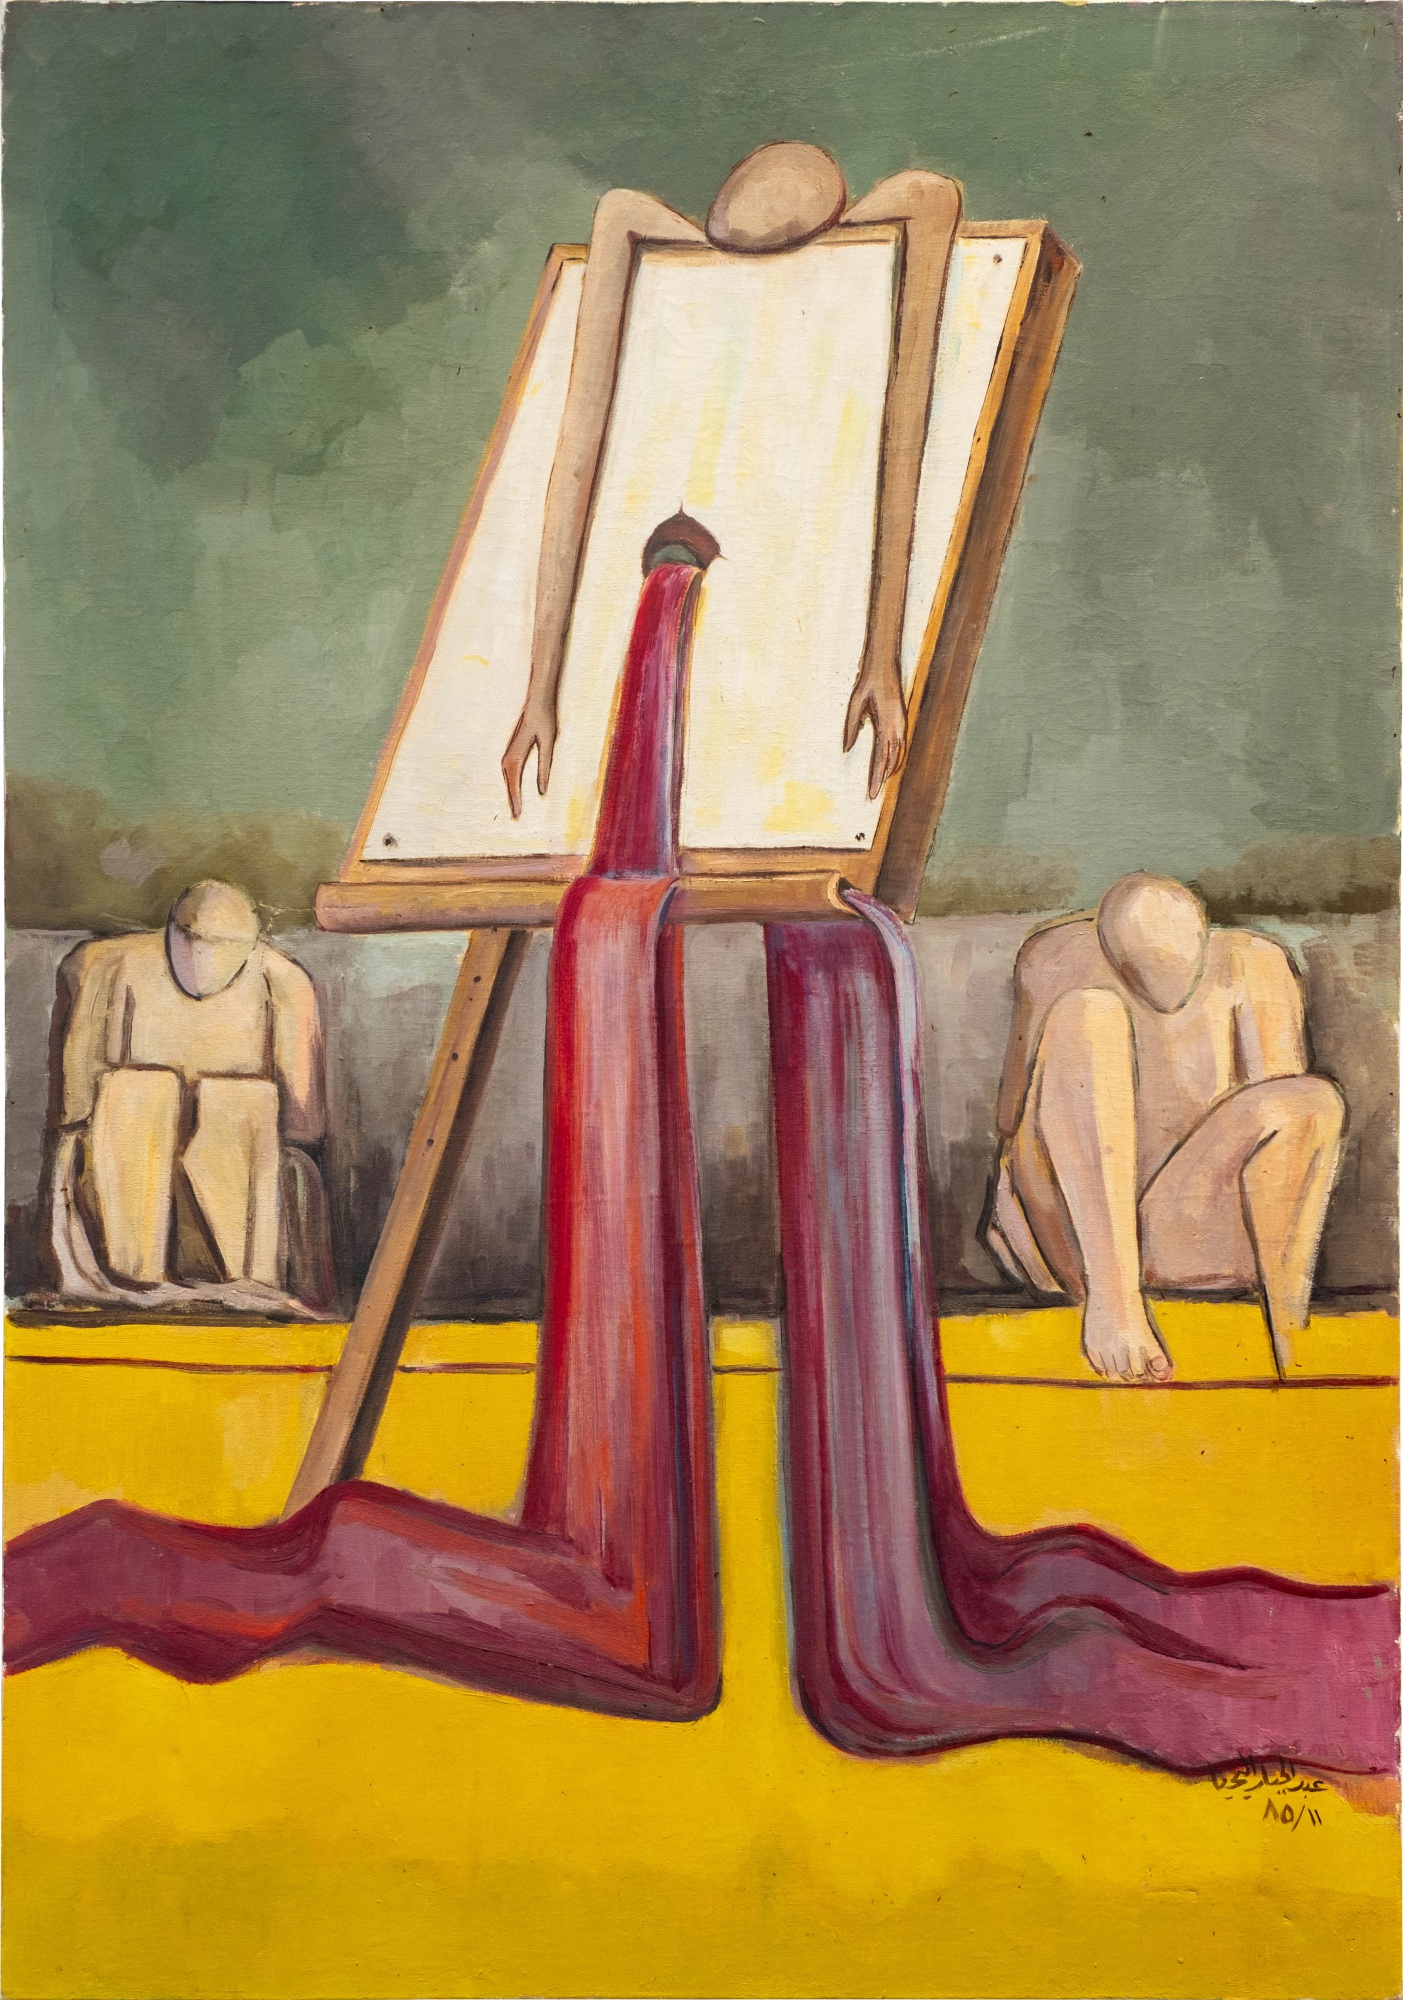 هنرمند 2 (1985)، عبدالجبار الیحیی. رنگ‌روغن روی بوم. برآورد قیمت: 150-200 هزار پوند.